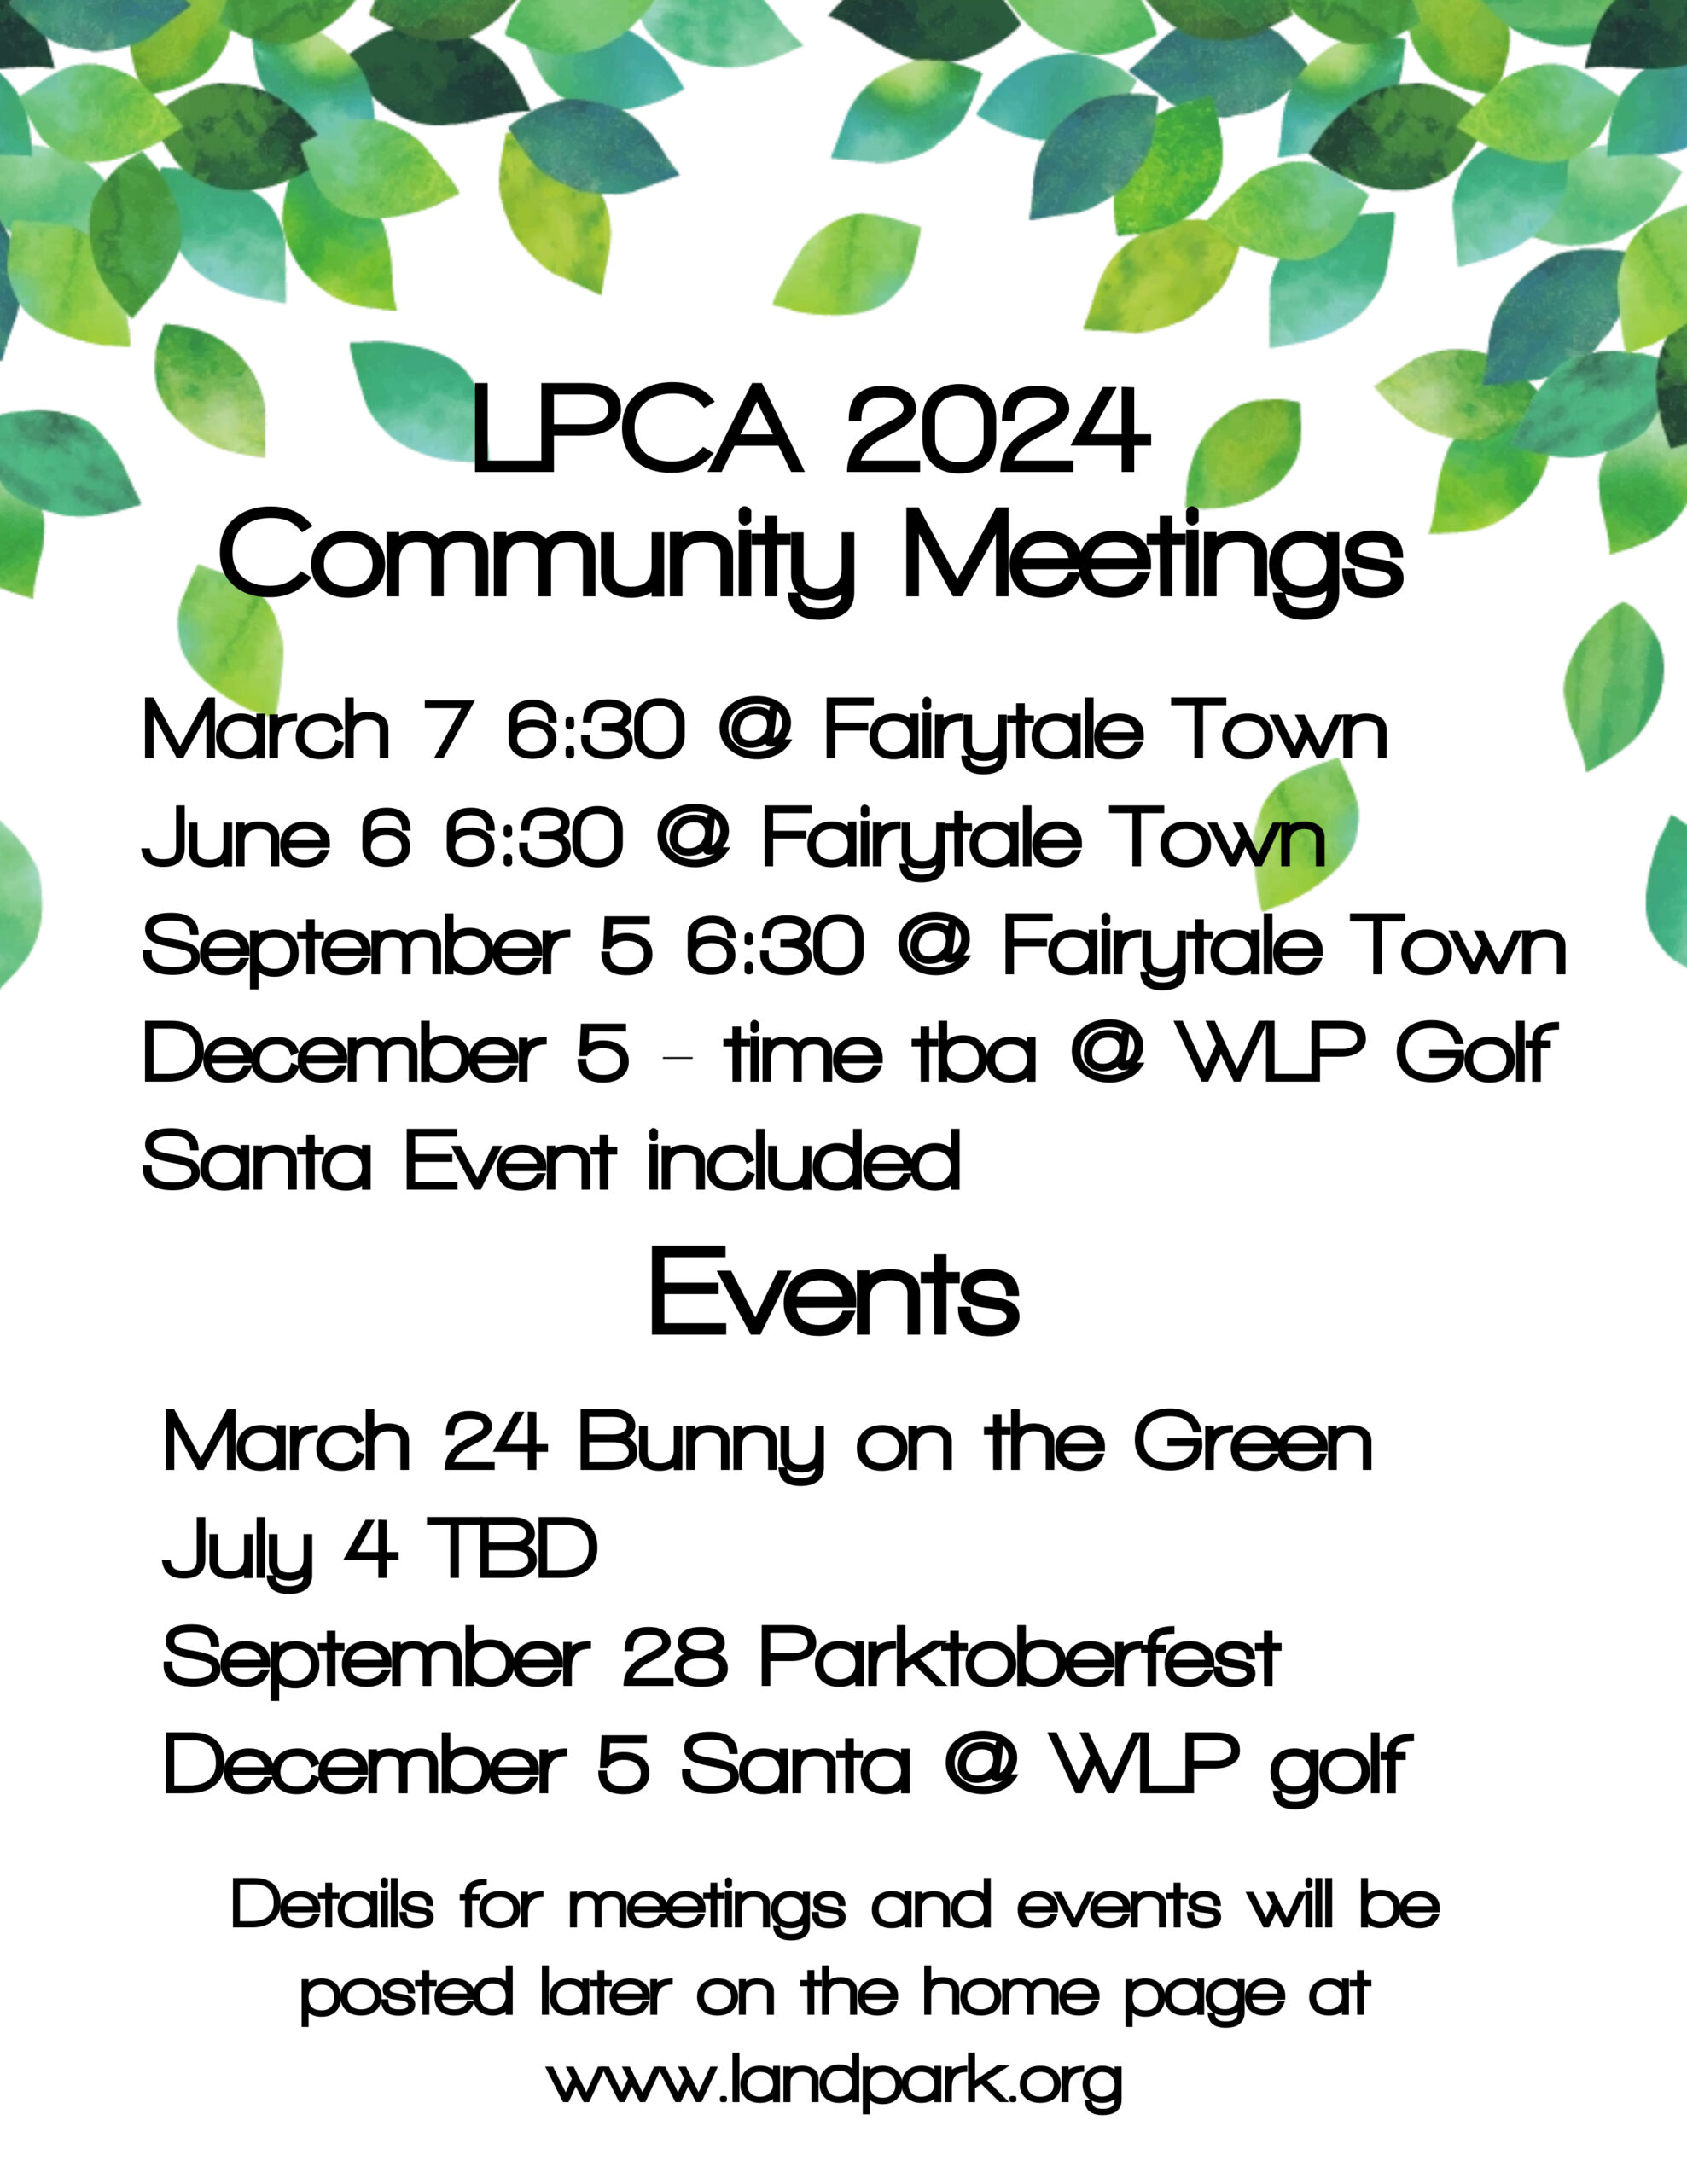 LPCA Community Calendar